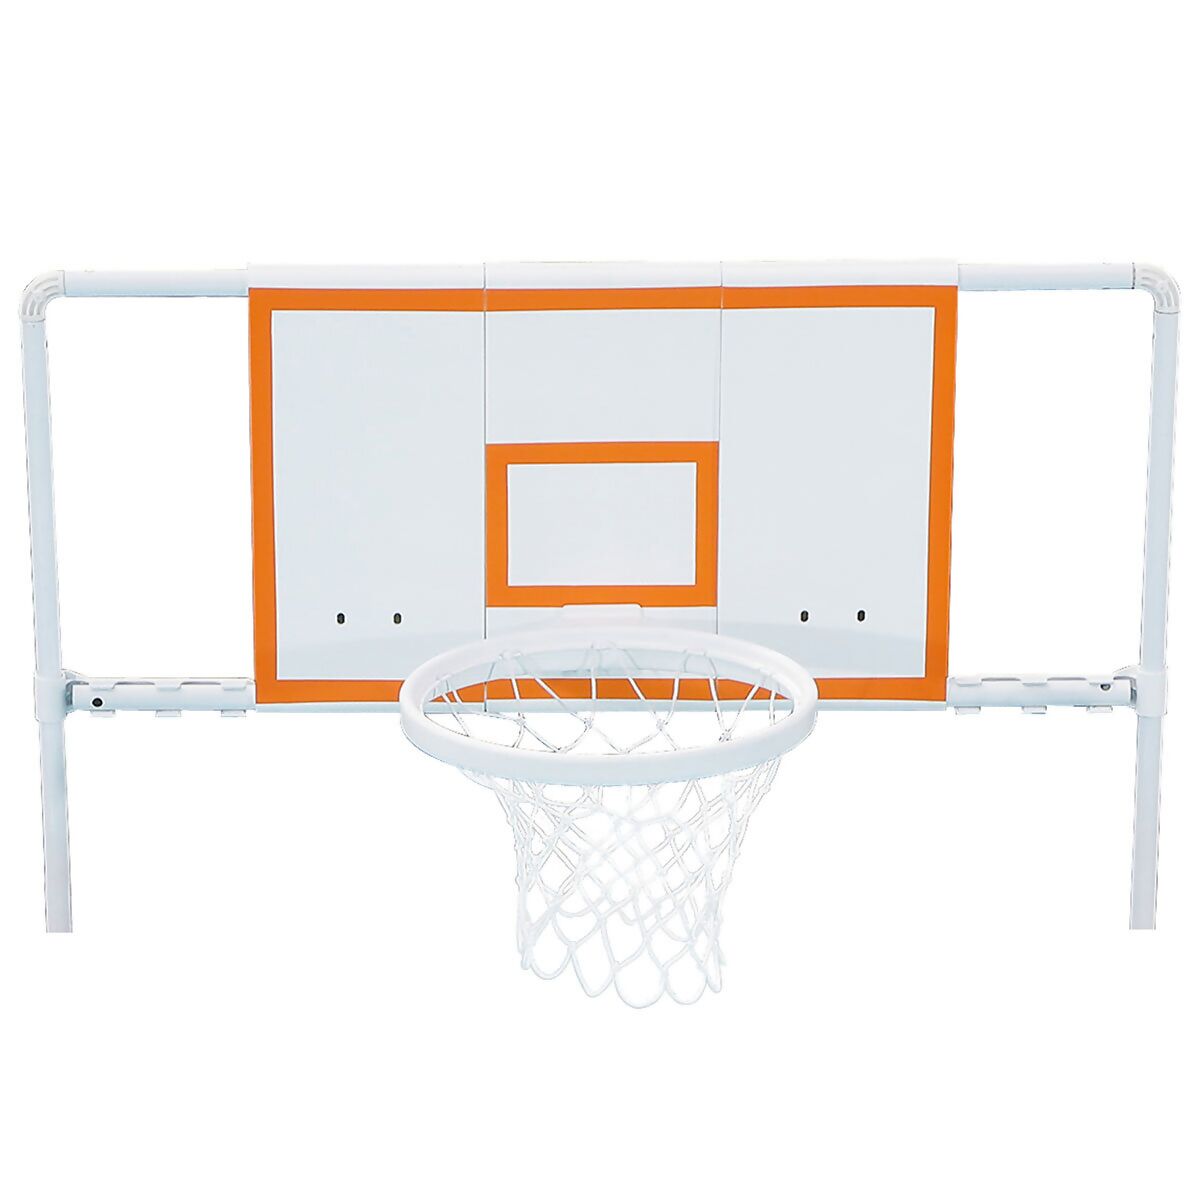 Basketball-Set für Stahlrahmenpool online kaufen bei Gärtner Pötschke